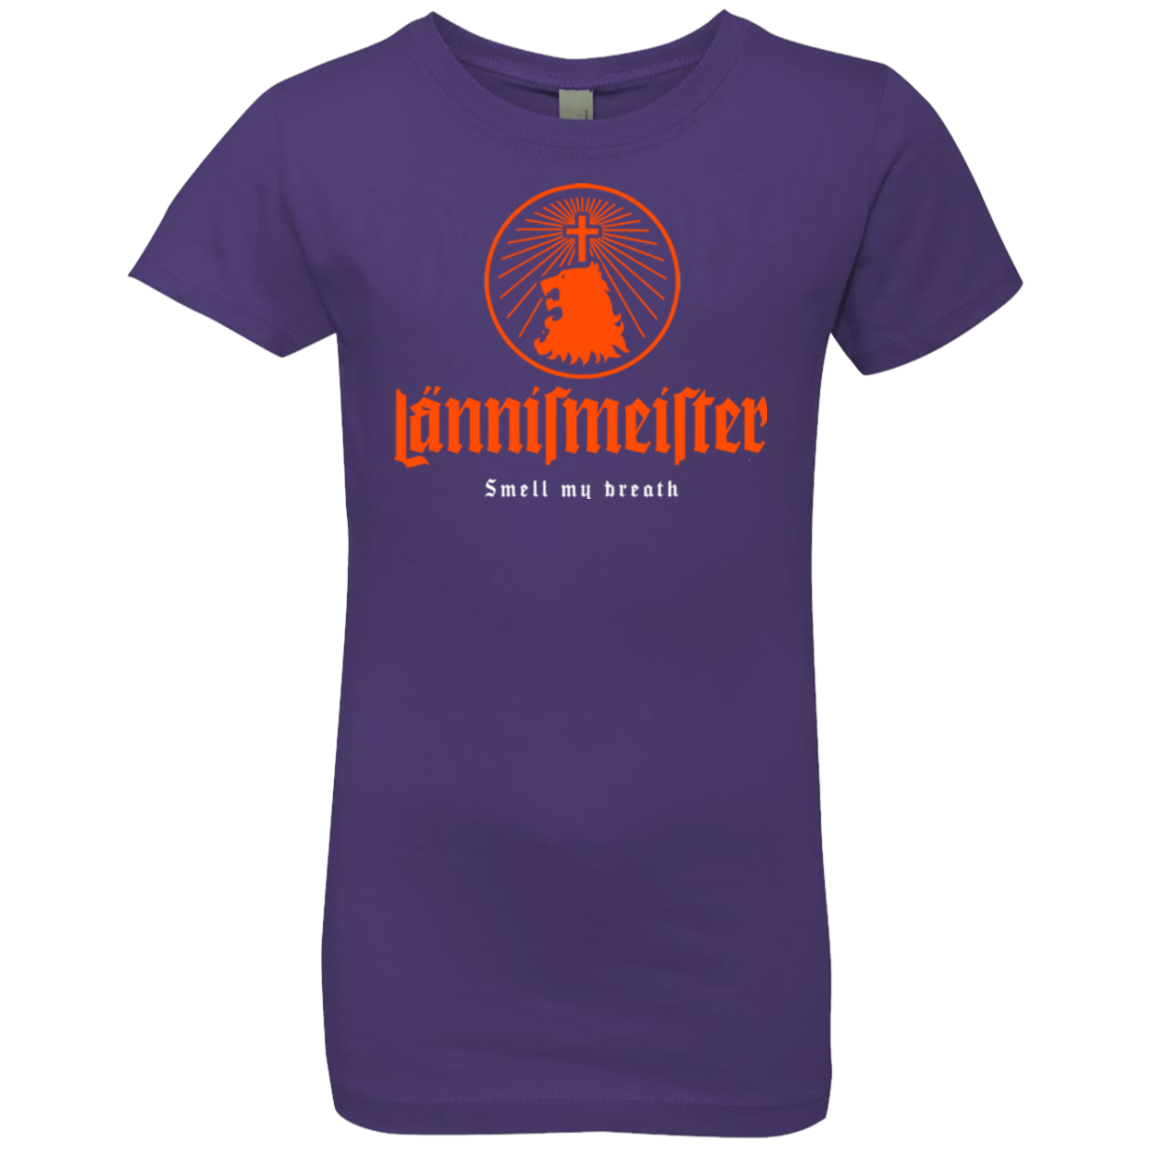 Lannismeister Girls Premium T-Shirt